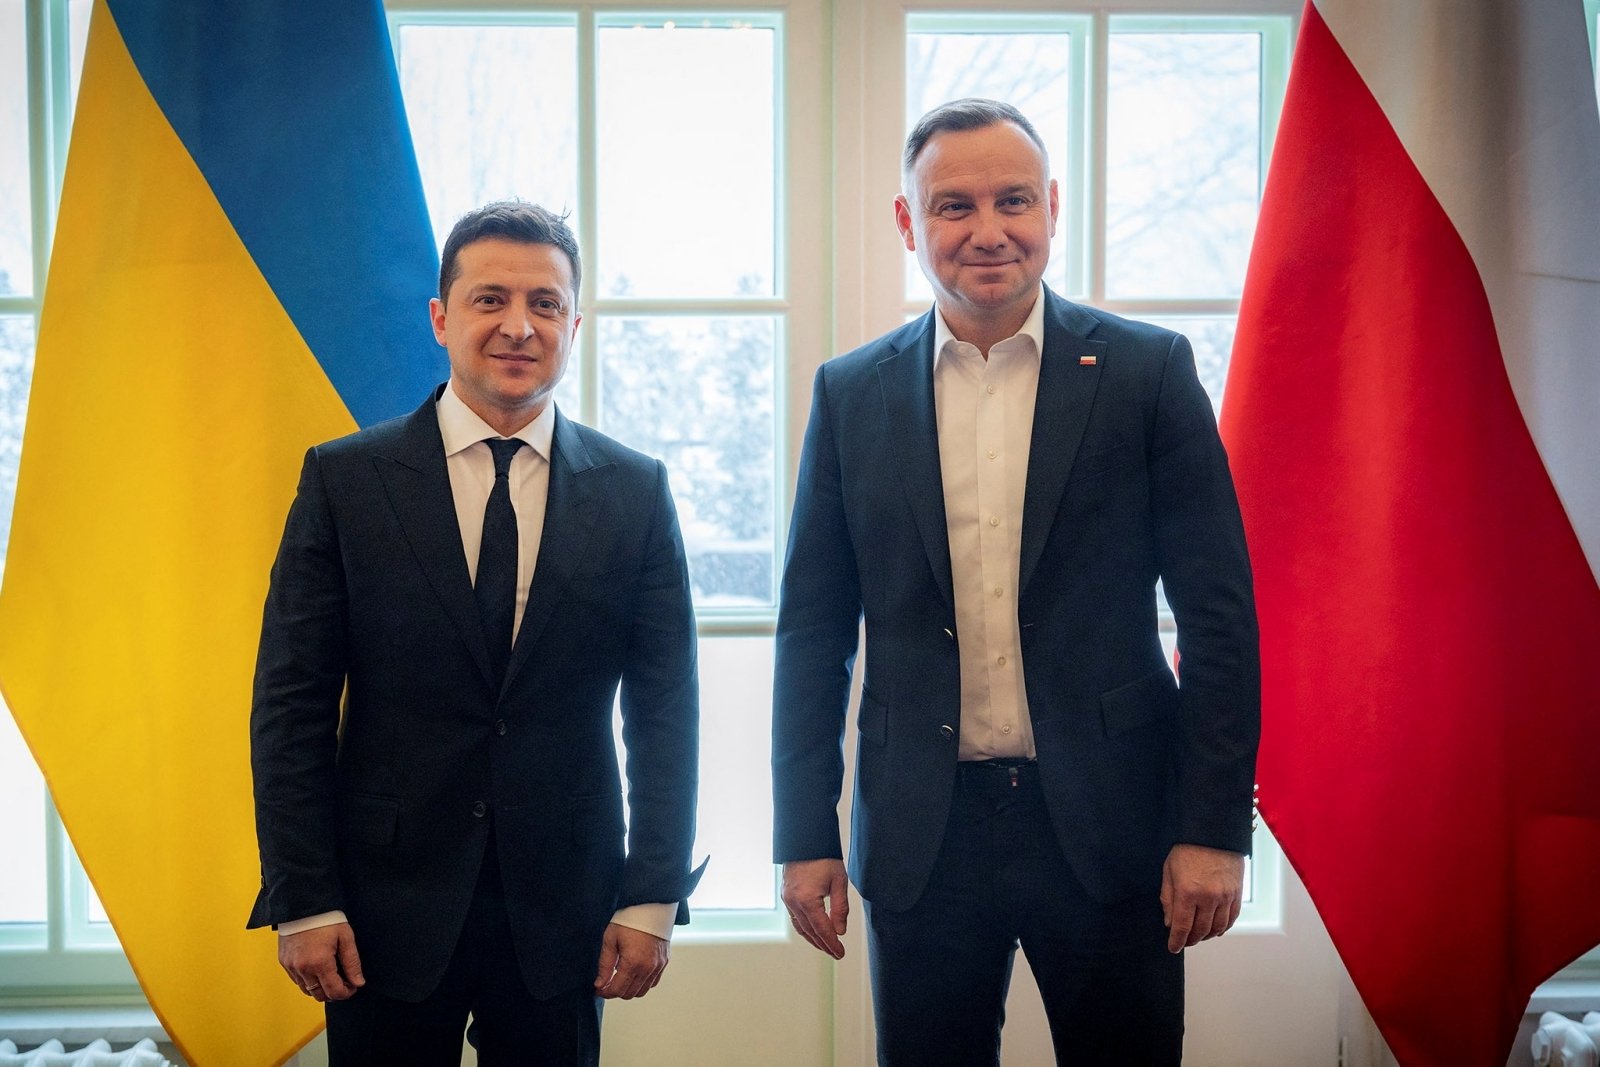 Poparcie Polski dla Ukrainy podczas wizyty Zełenskiego